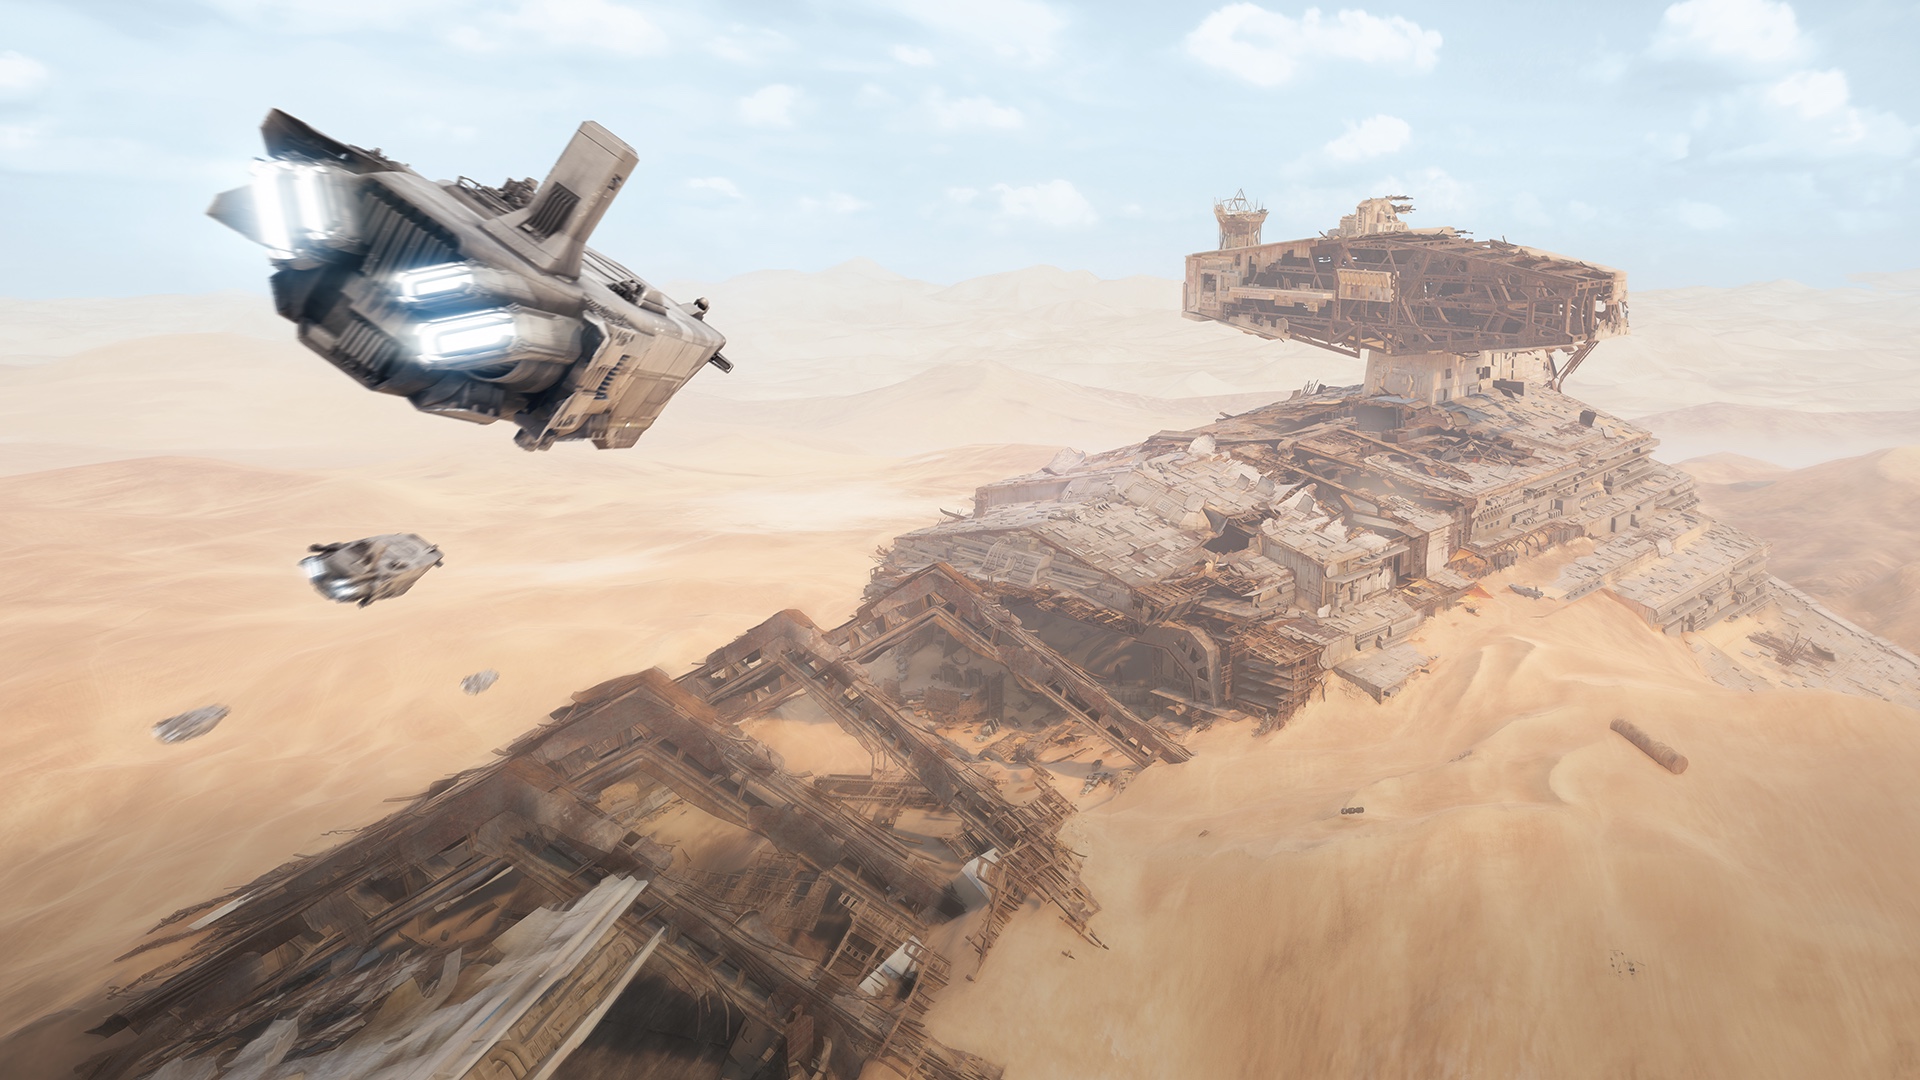 Star Wars Spaceship Jakku Star Destroyer Science Fiction Desert Ruin Film Set 1920x1080